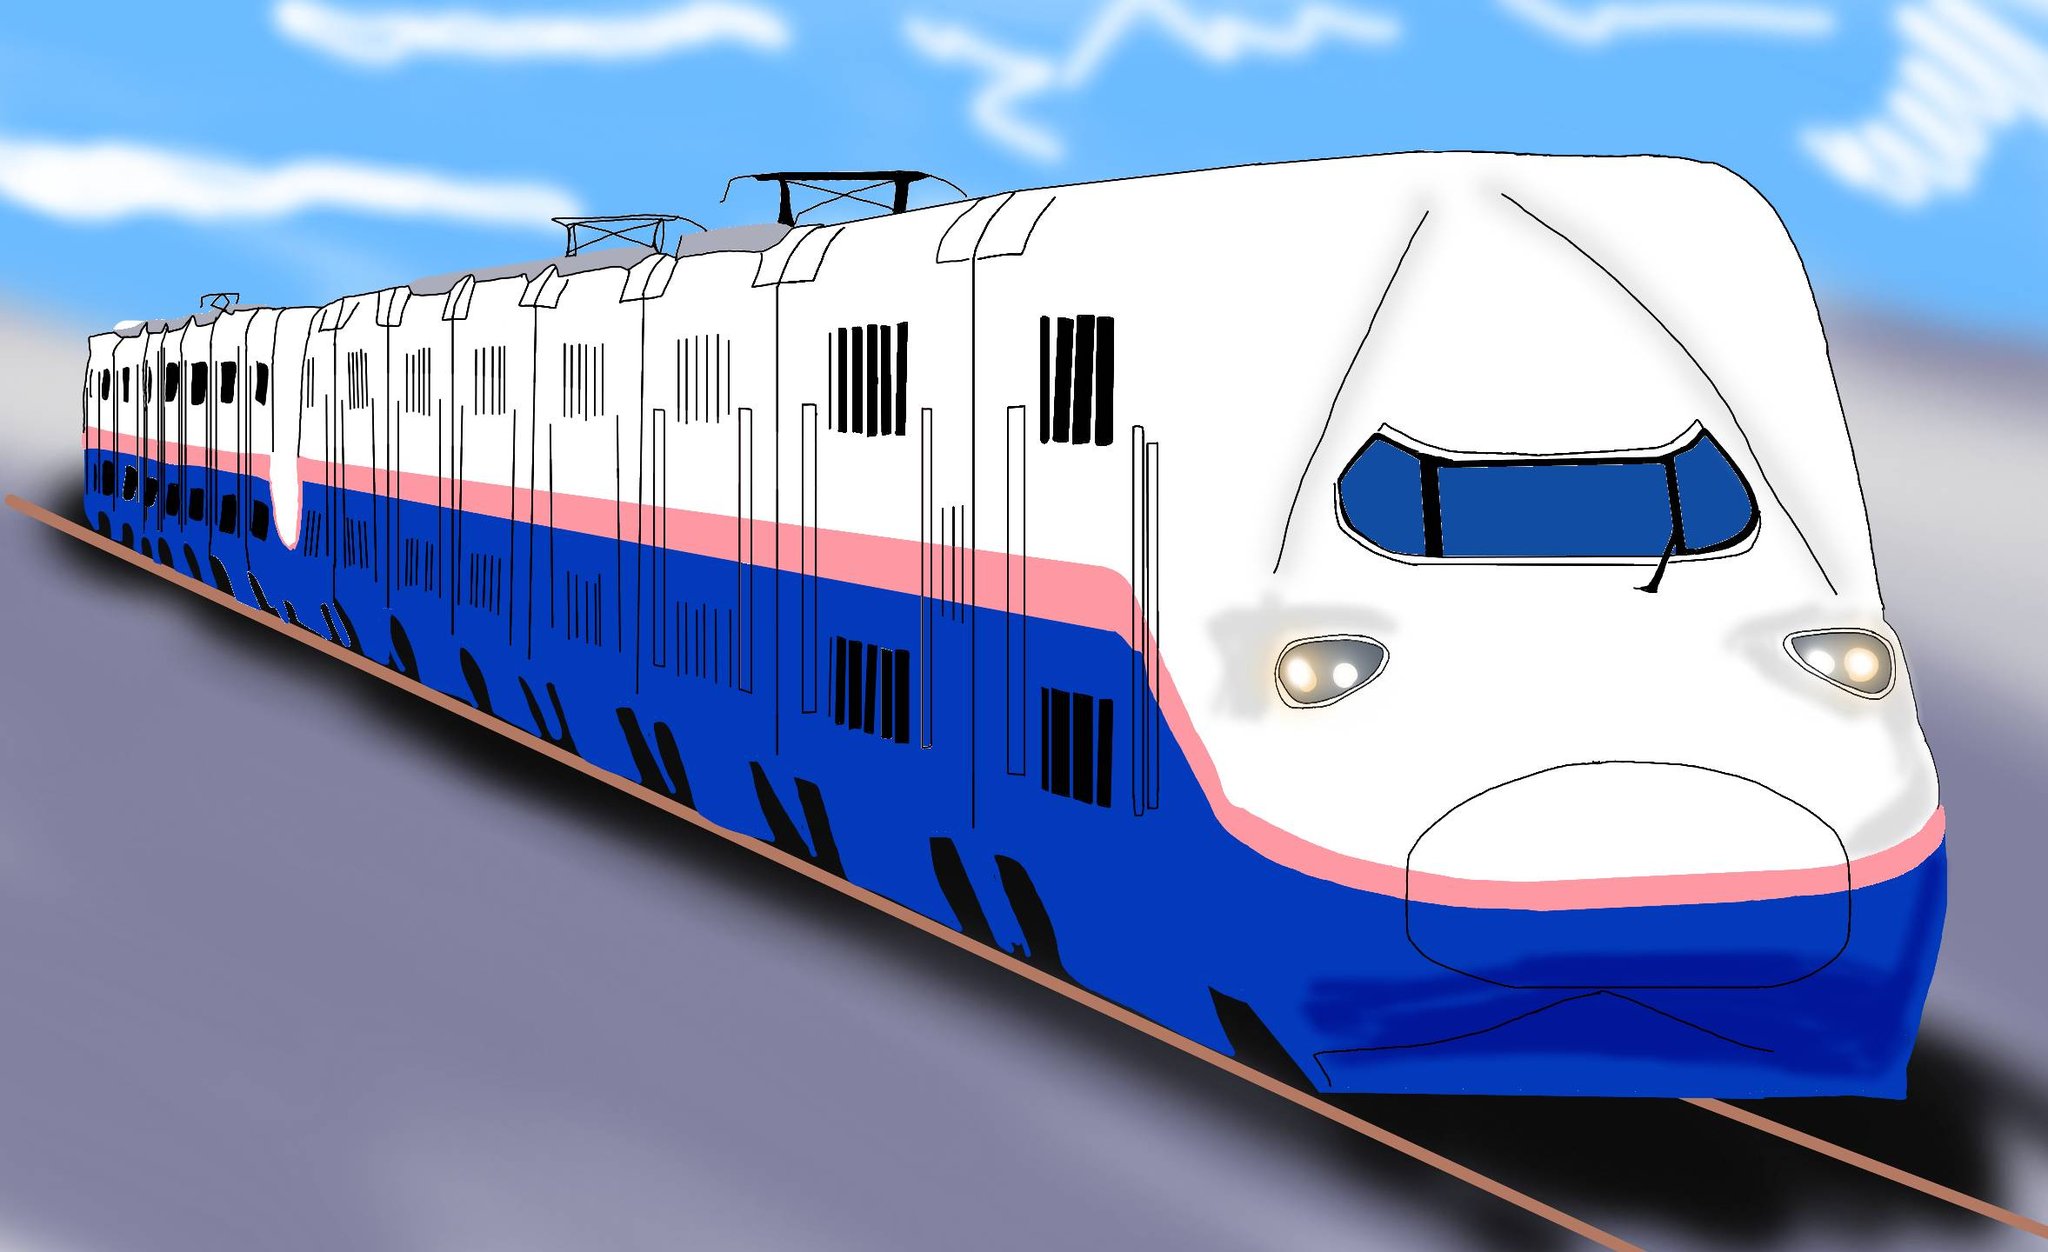 モアイ 今年の秋に引退するe4系を描きました Jr東日本 E4系 上越新幹線 新幹線 鉄道イラスト 描き鉄 鉄道 鉄道好きな人と繋がりたい 絵描きさんと繋がりたい デジタルイラスト イラストグラム T Co Qk8ownats8 Twitter